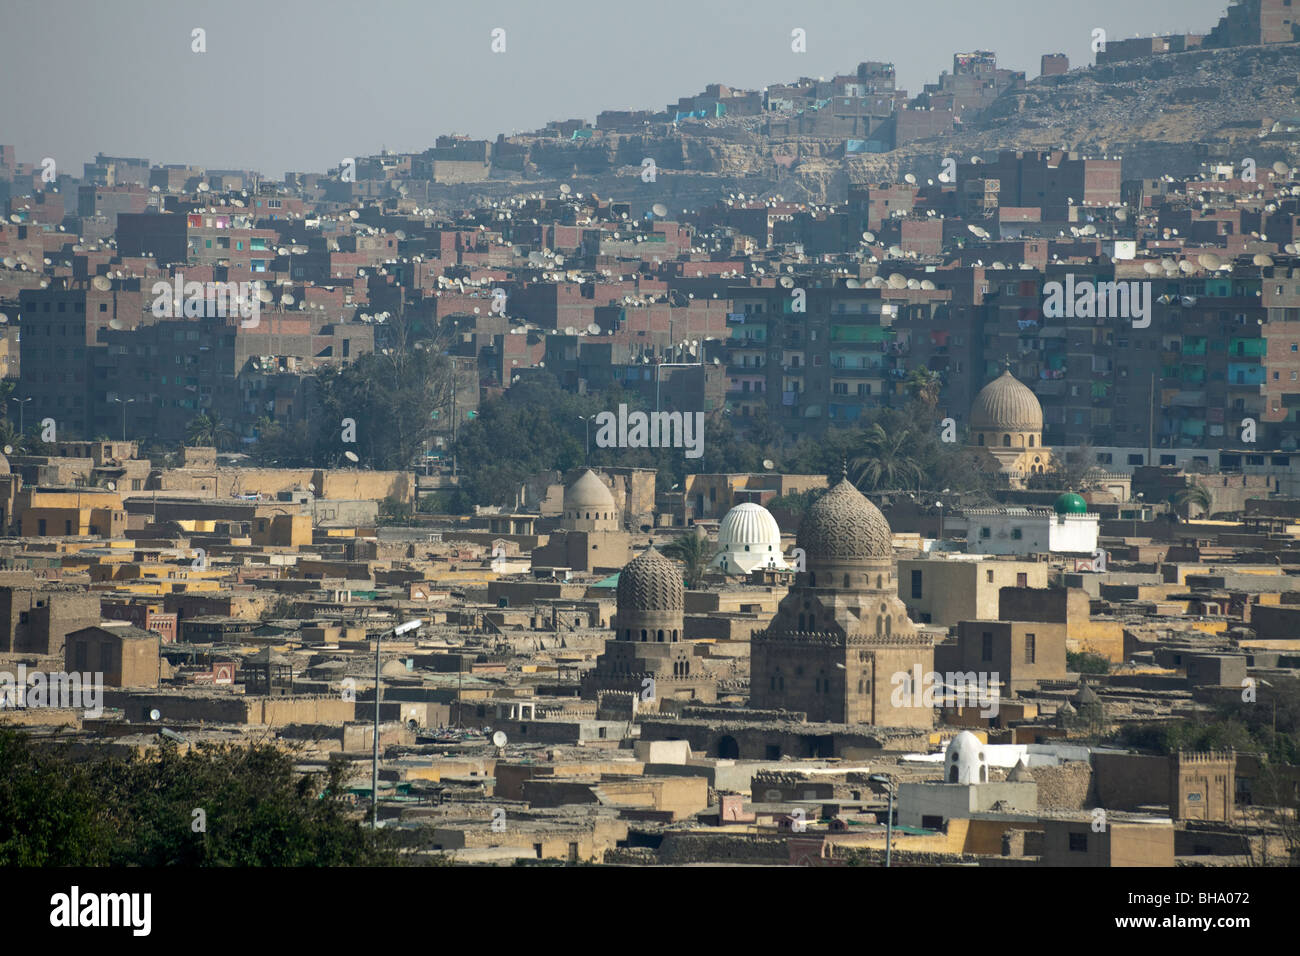 Die Slums von Manshiyat Nasr hinter den Mamluk Gräbern auf dem nördlichen Friedhof, Kairo, Ägypten Stockfoto